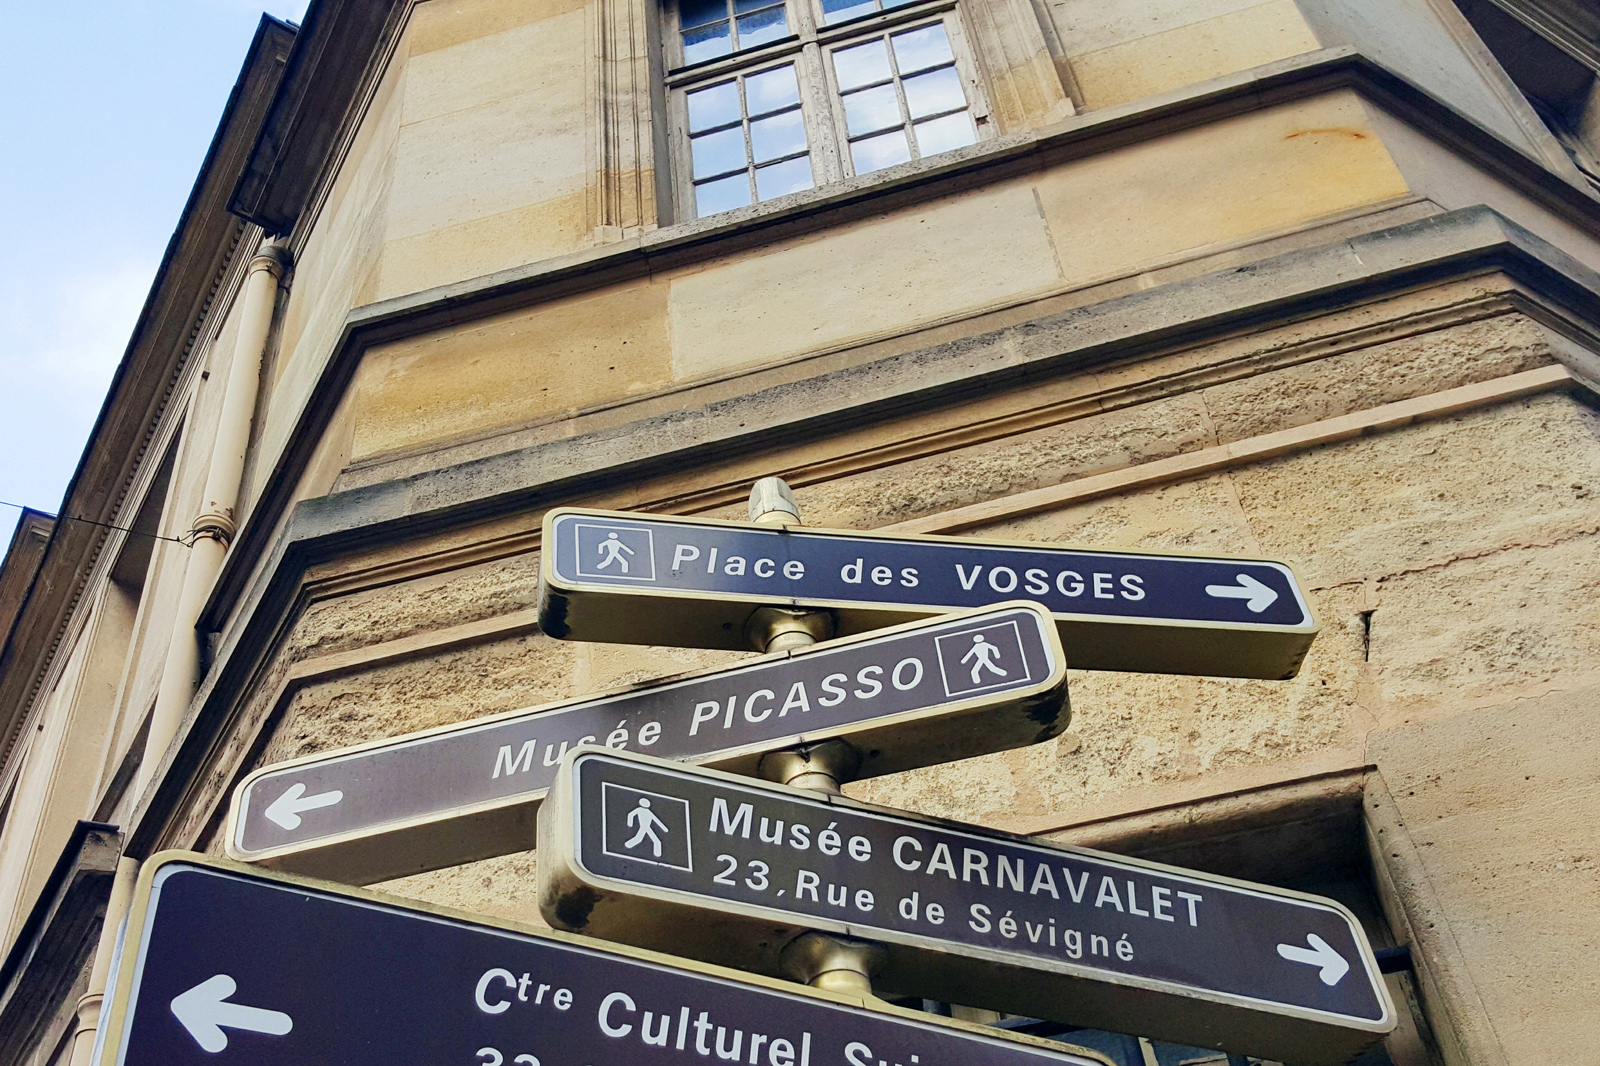 Le Marais rue panneaux de direction Musée national Picasso Paris Musée Carnavelet Place des Vosges photo by united states of paris blog